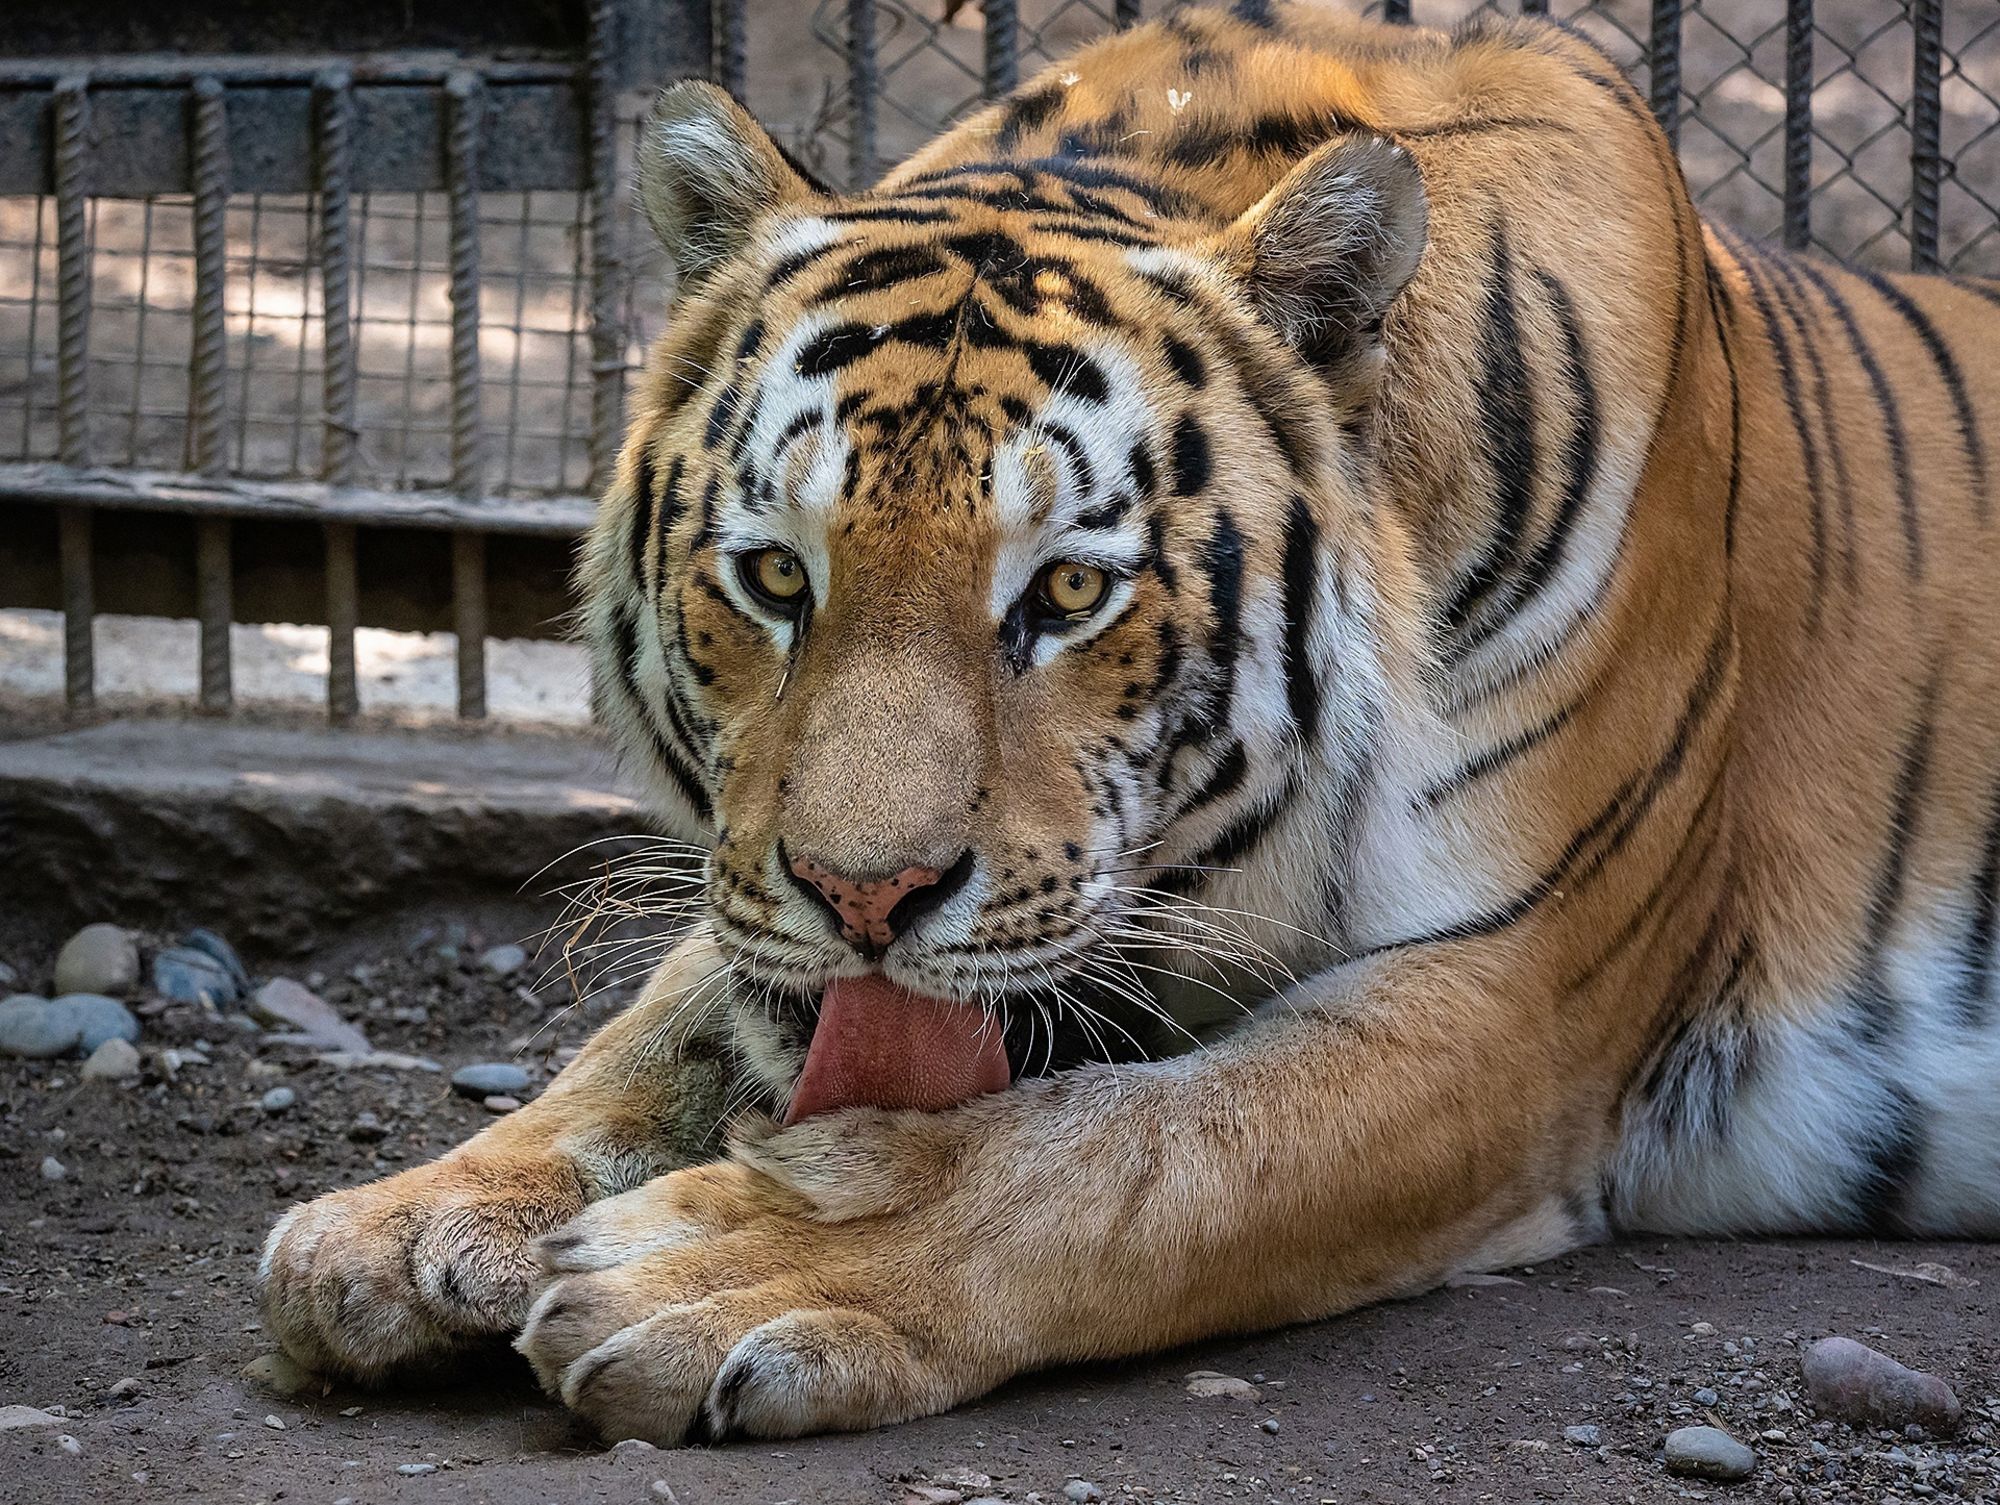 Неожиданная встреча с тигром: что делать? (ПАМЯТКА)